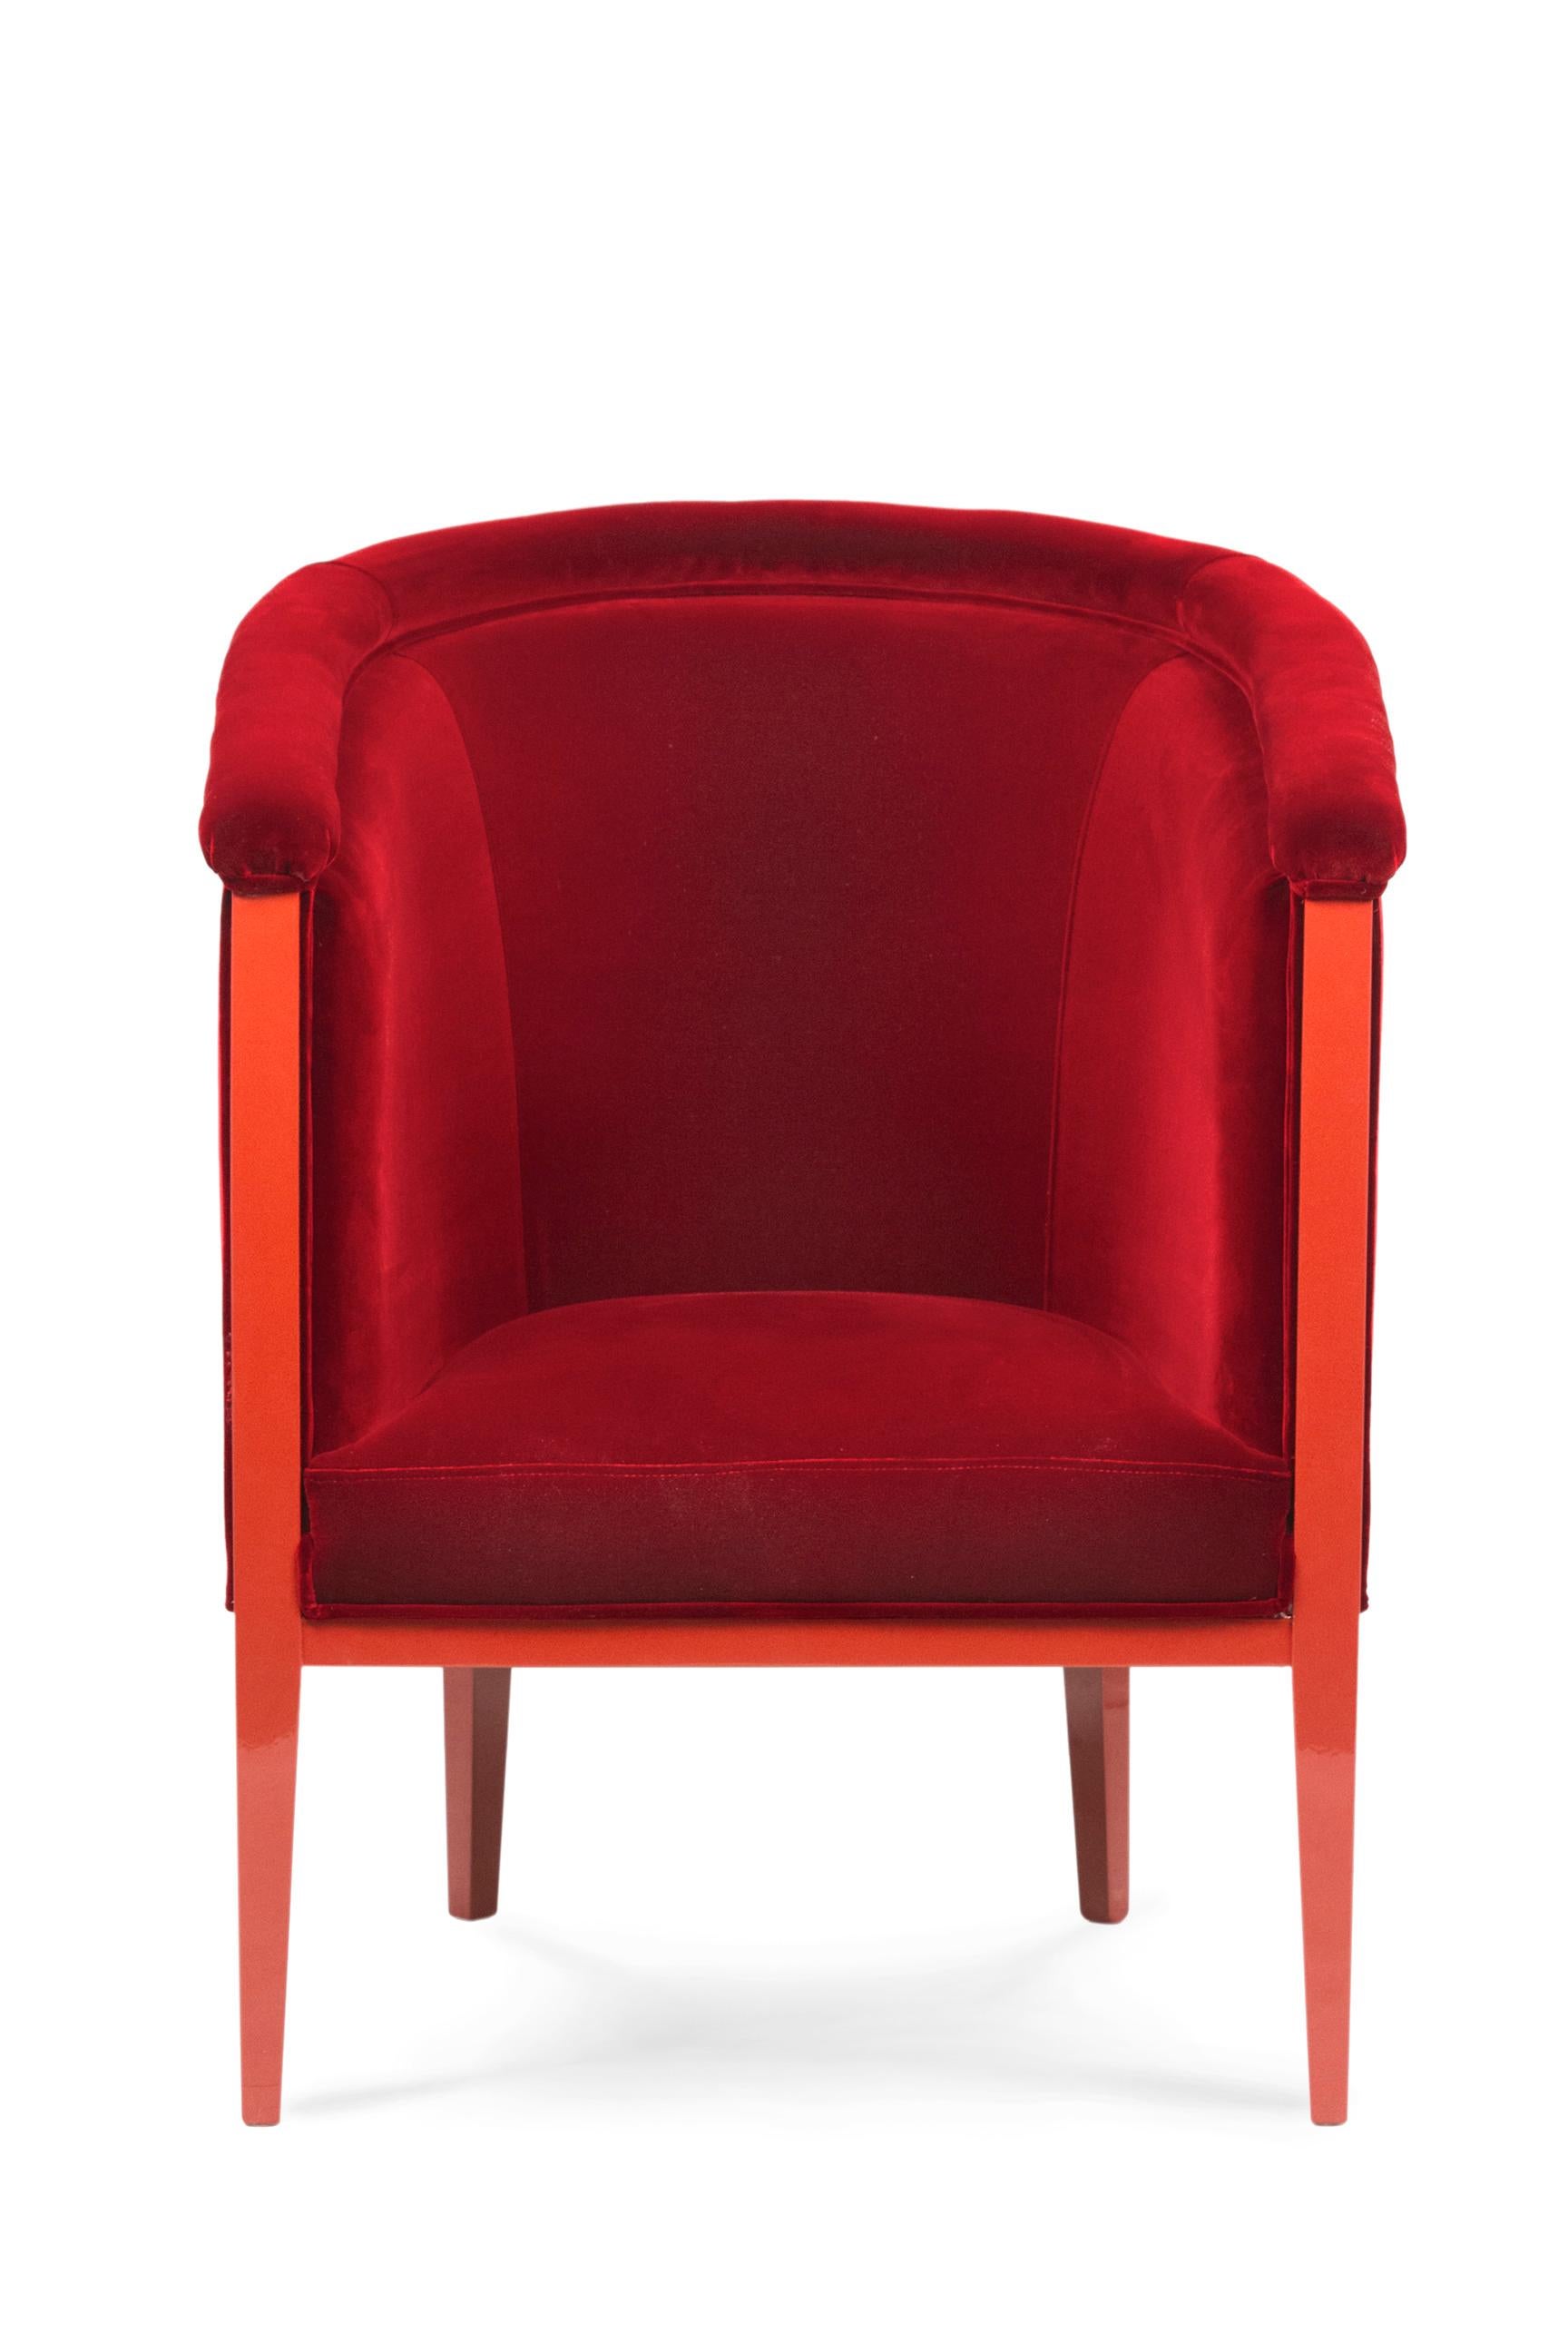 Art Deco Scarlet Armchair DEDAR Red Cotton Velvet Handmade Portugal Greenapple For Sale 1